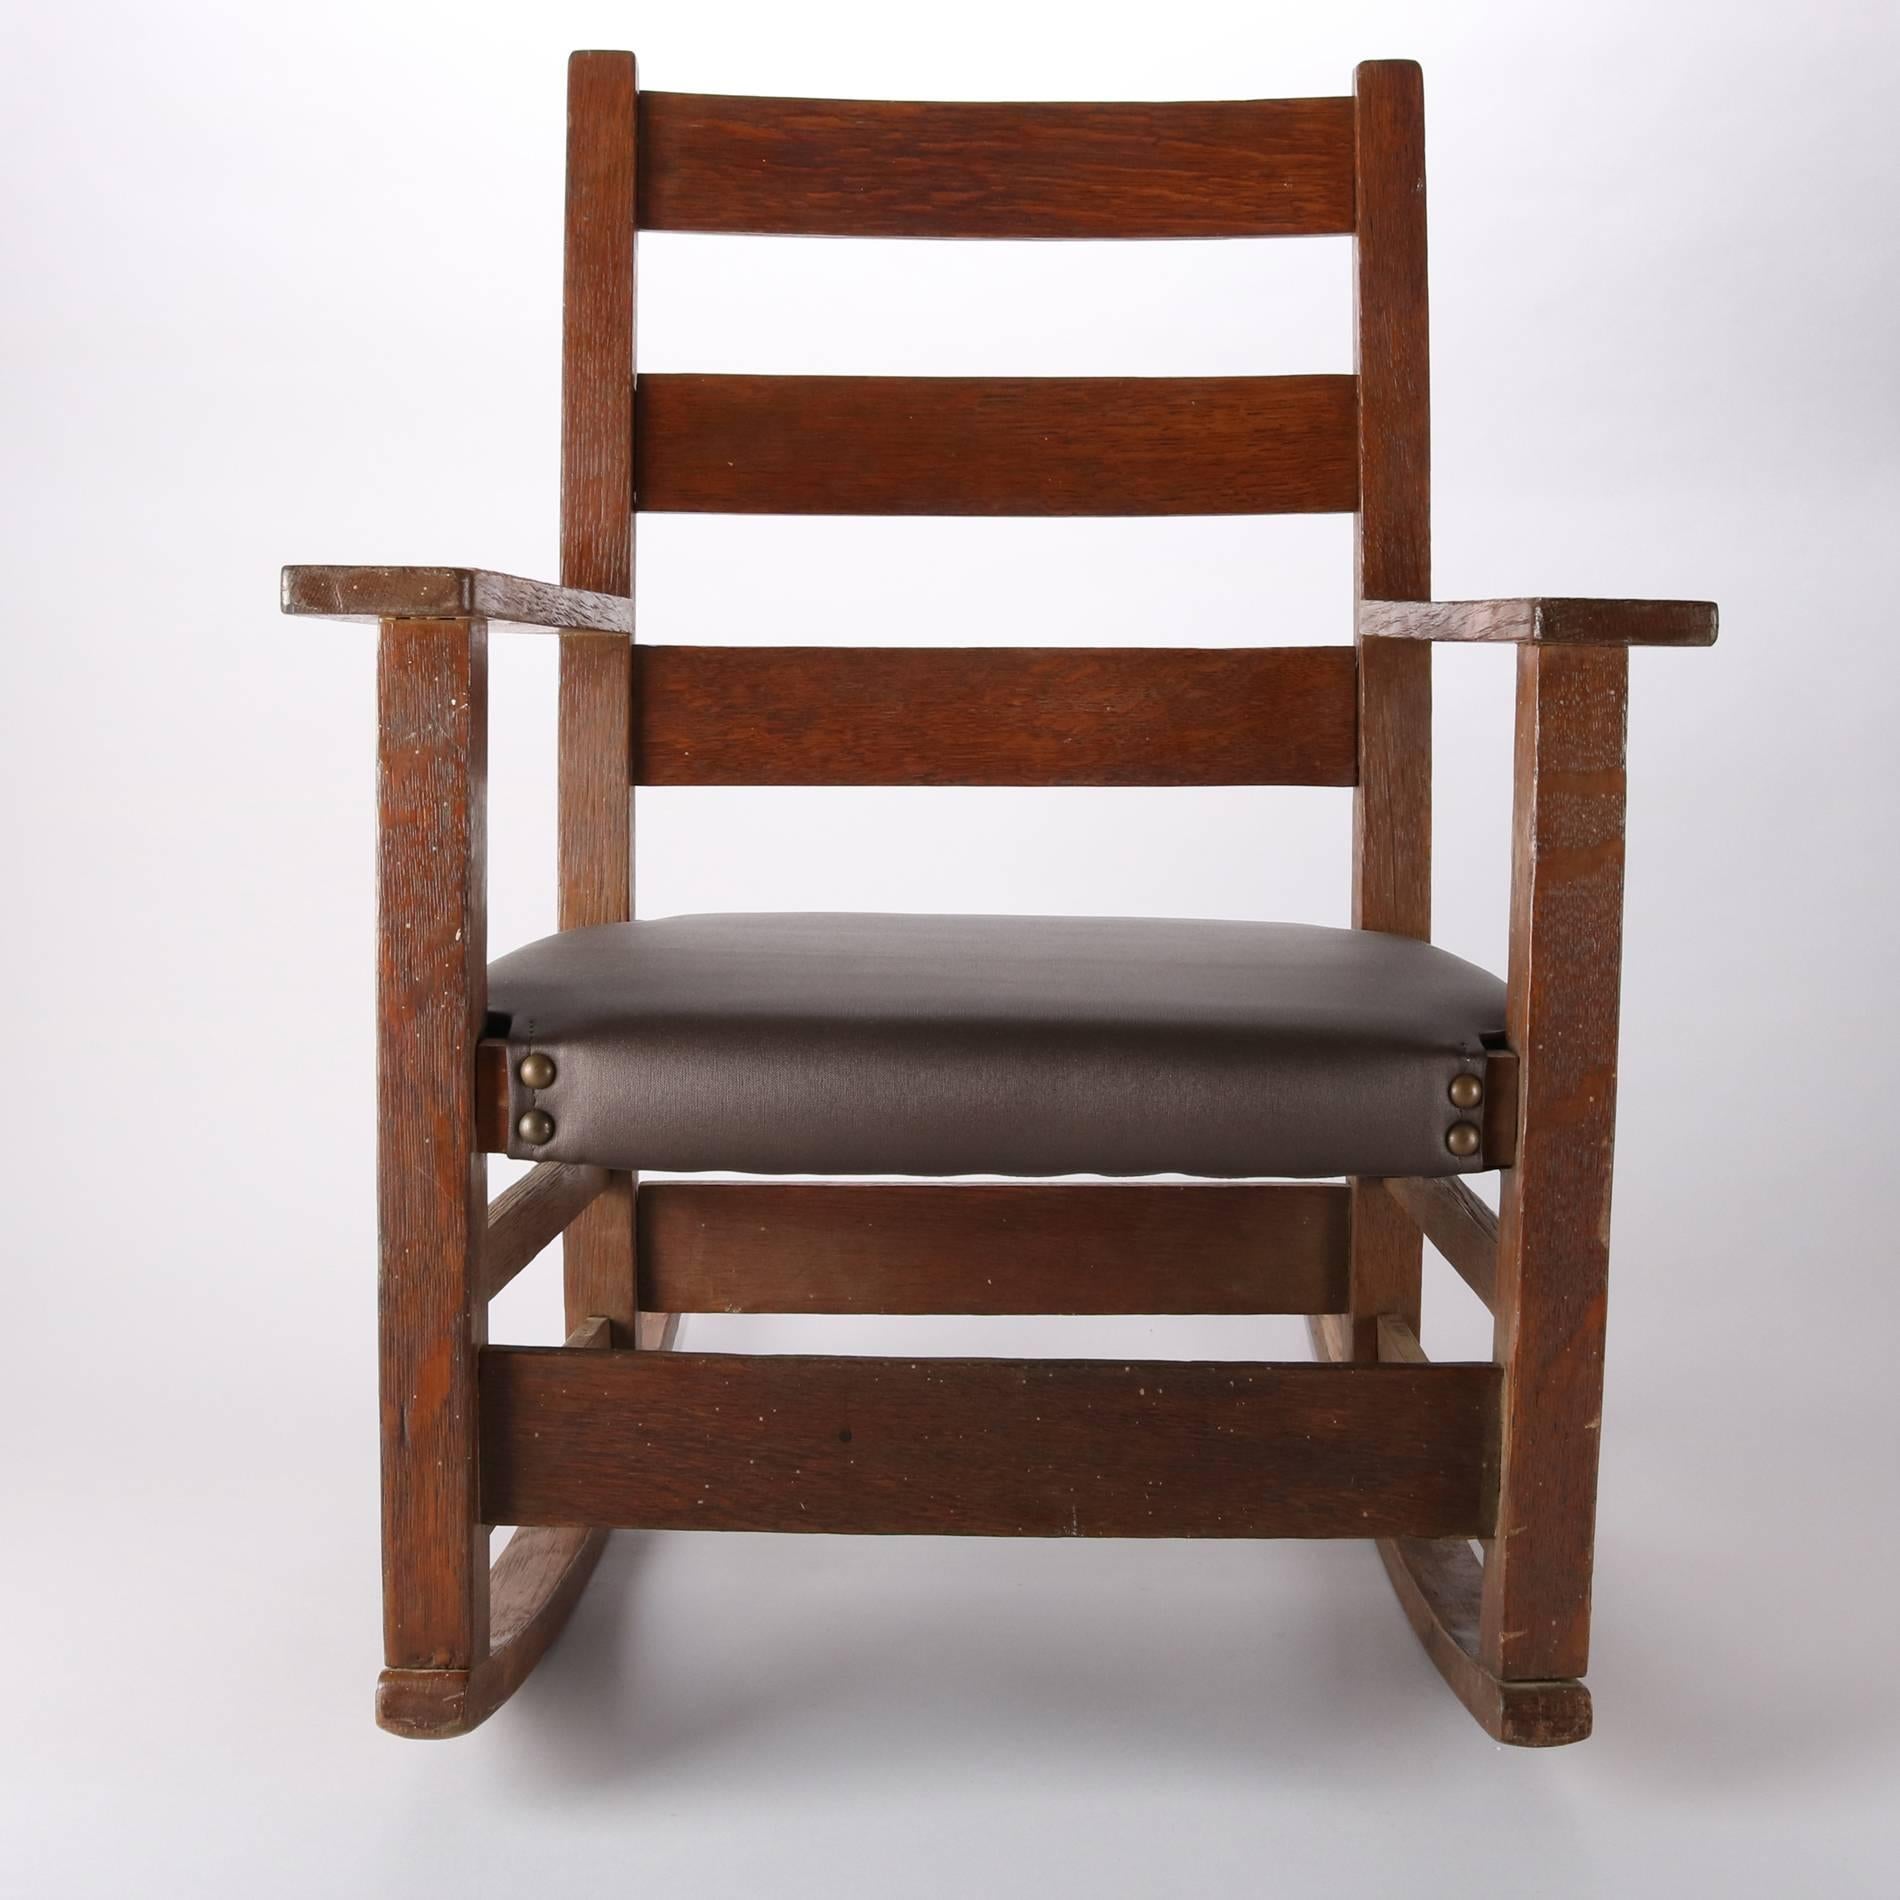 Antique Gustav Stickley Arts & Crafts Mission oak child's rocker, newer upholstered seat, circa 1910

Measures: 25